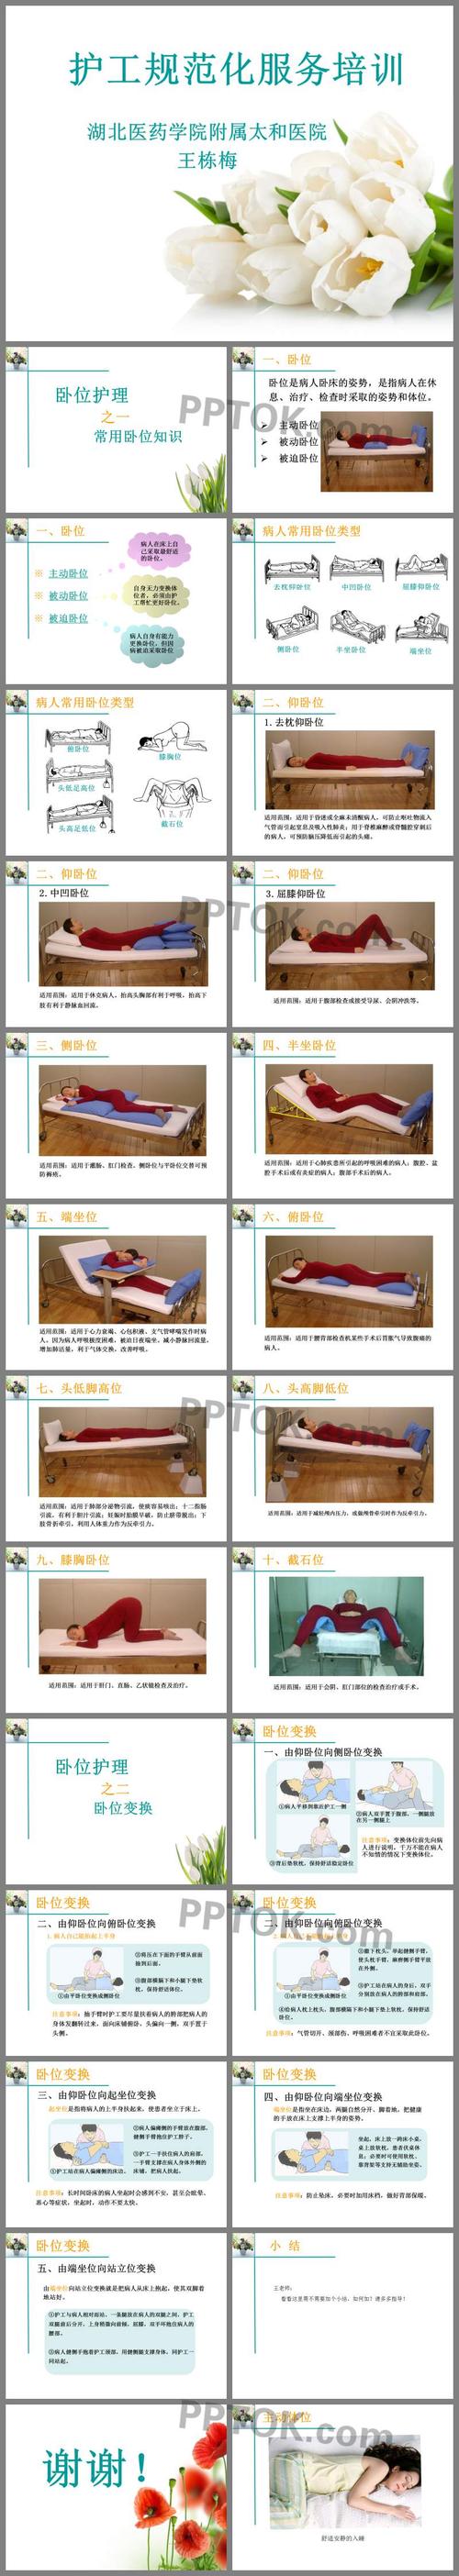 主要介绍了卧位;病人常用卧位类型;仰卧位;侧卧位;半坐卧位;端坐位